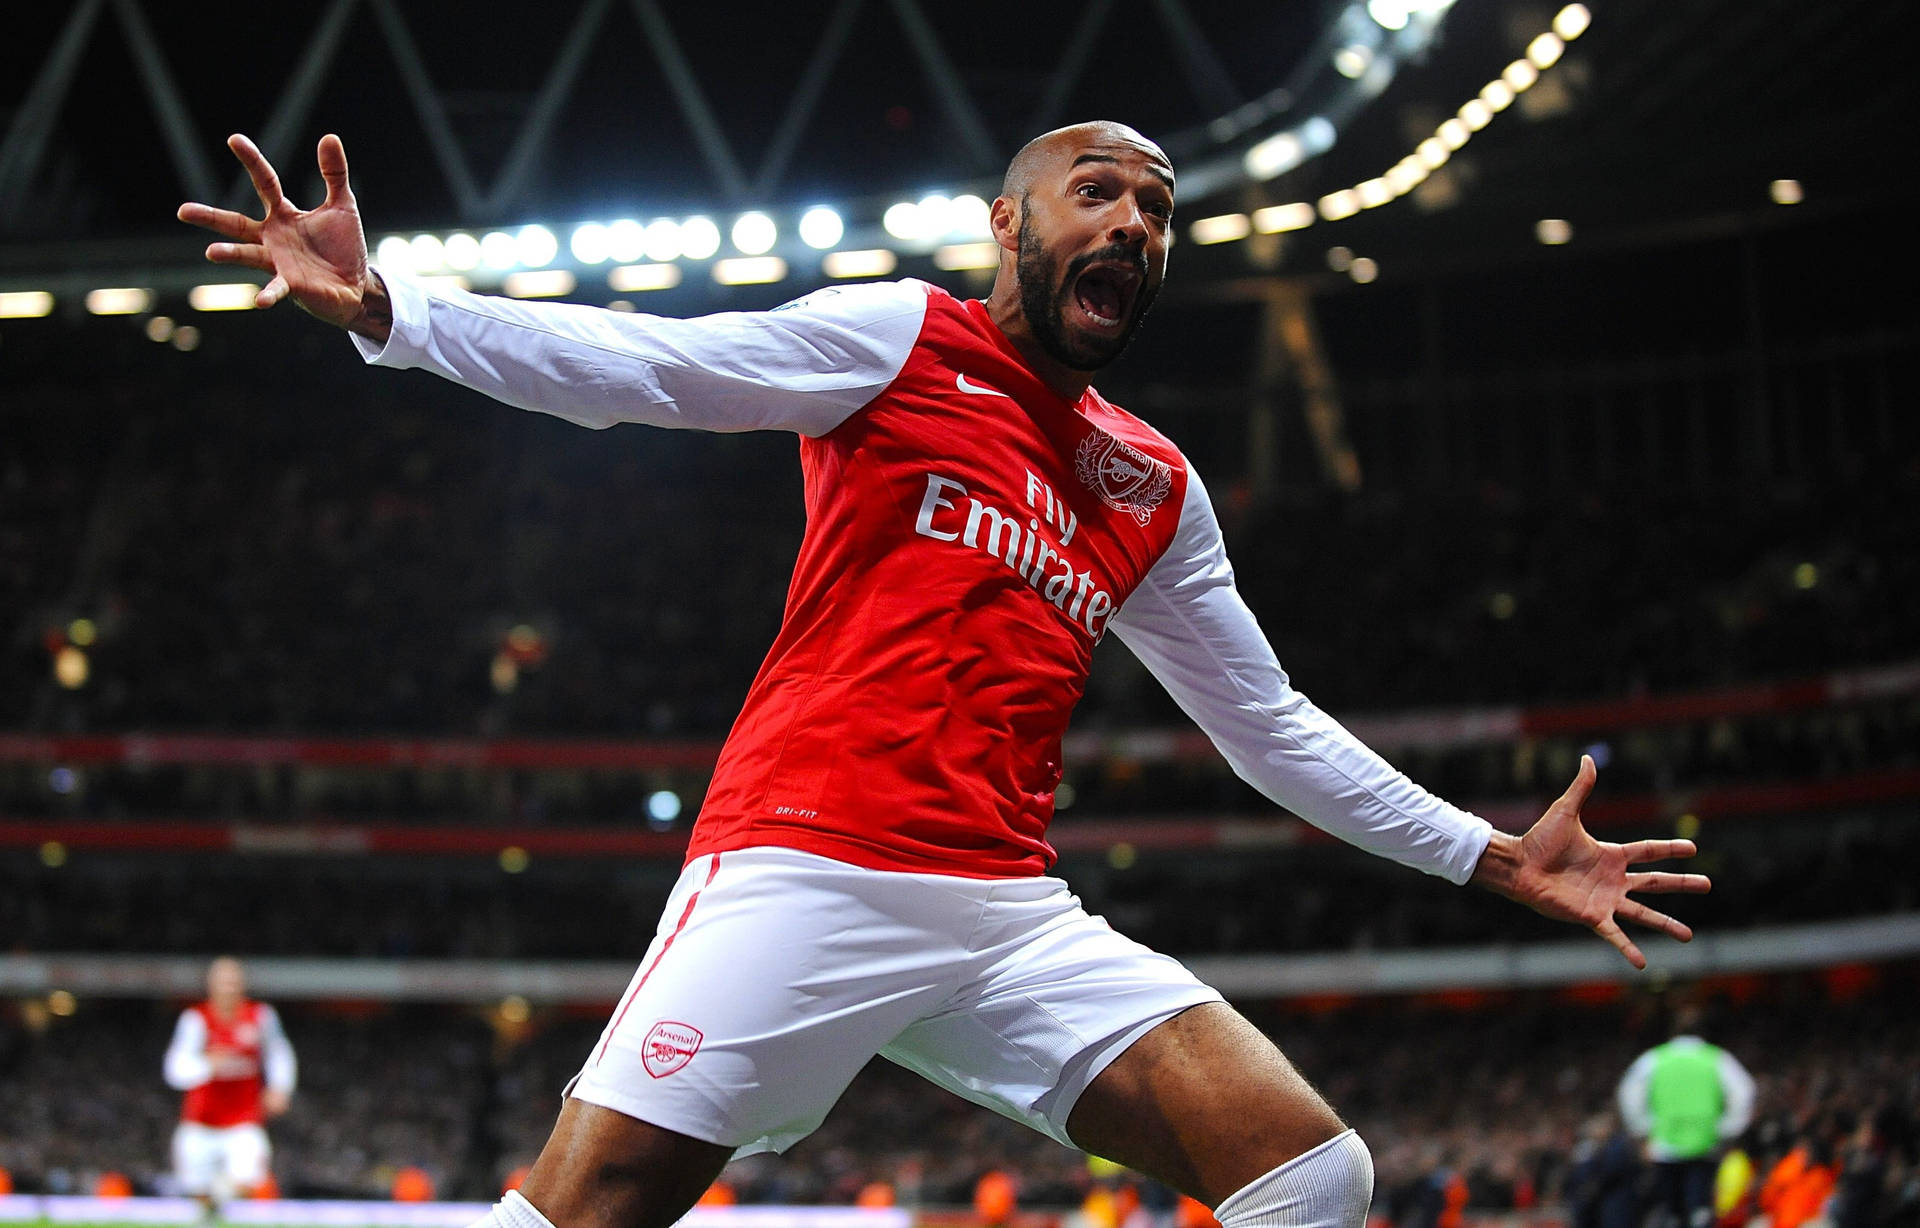 Vær vinderen for Thierry Henry og Arsenal FC Wallpaper